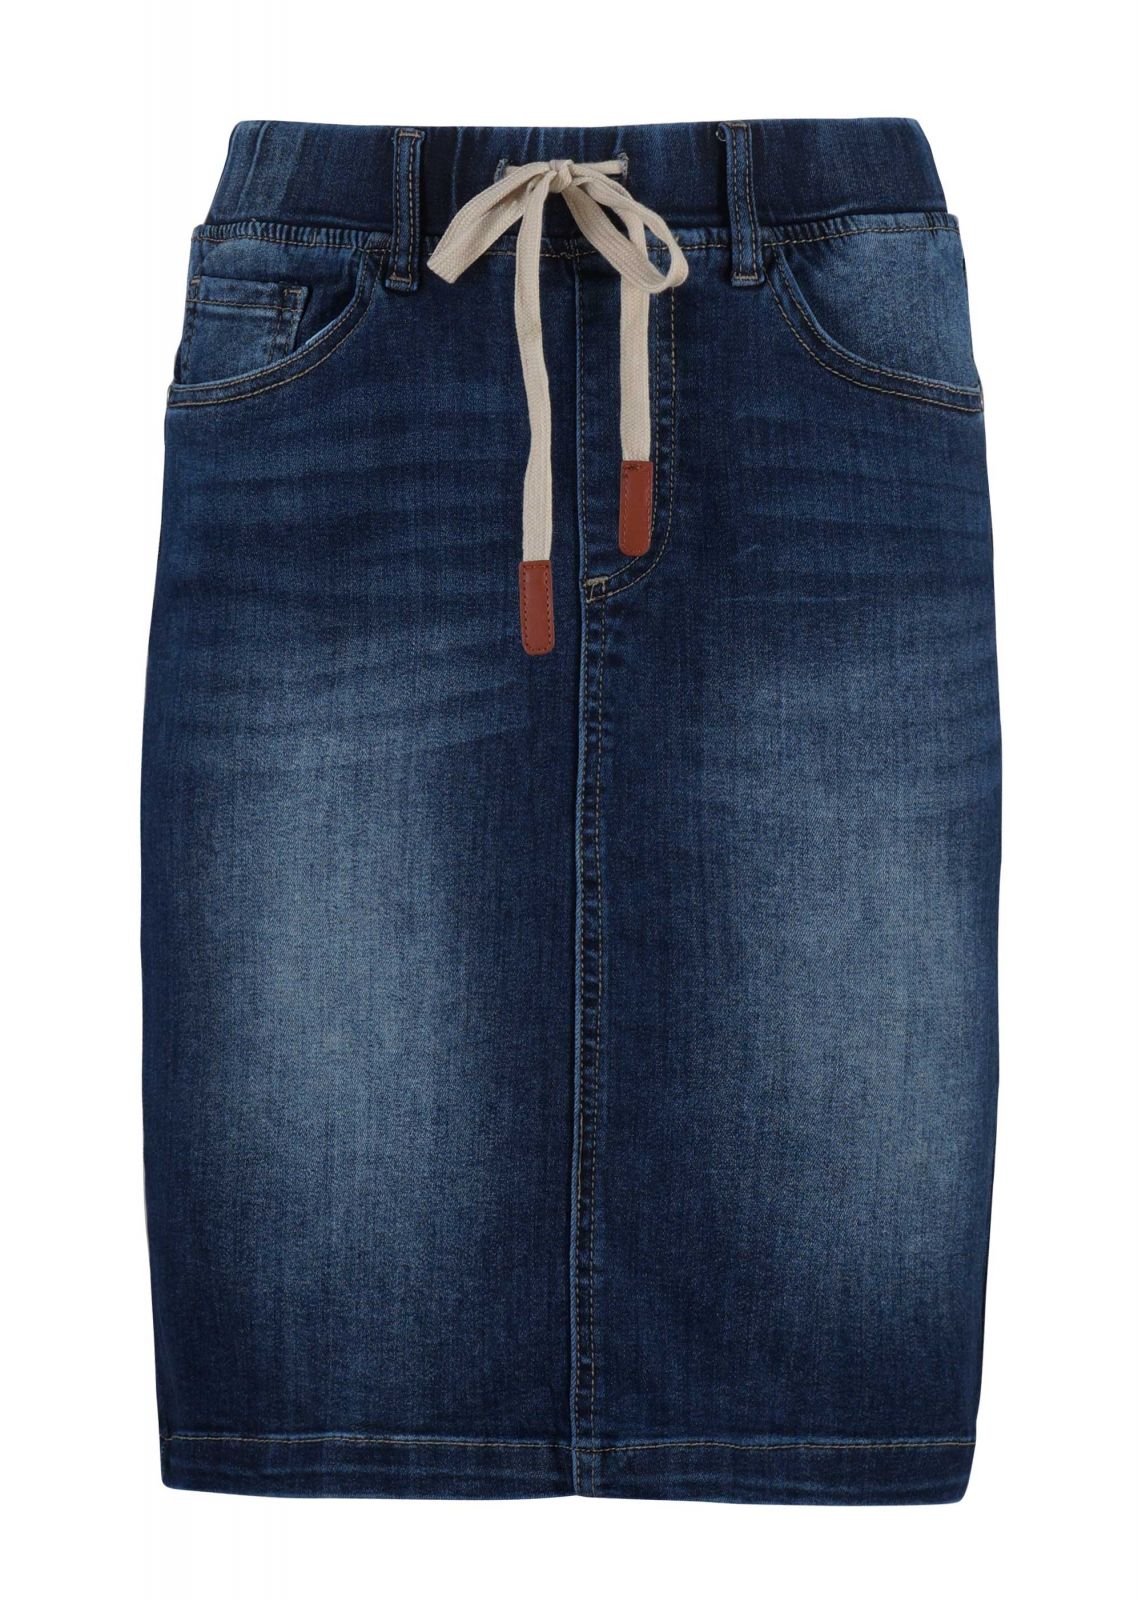 Γυναικεία φούστα jean γραμμή pencil με ελαστικότητα. Denim collection.